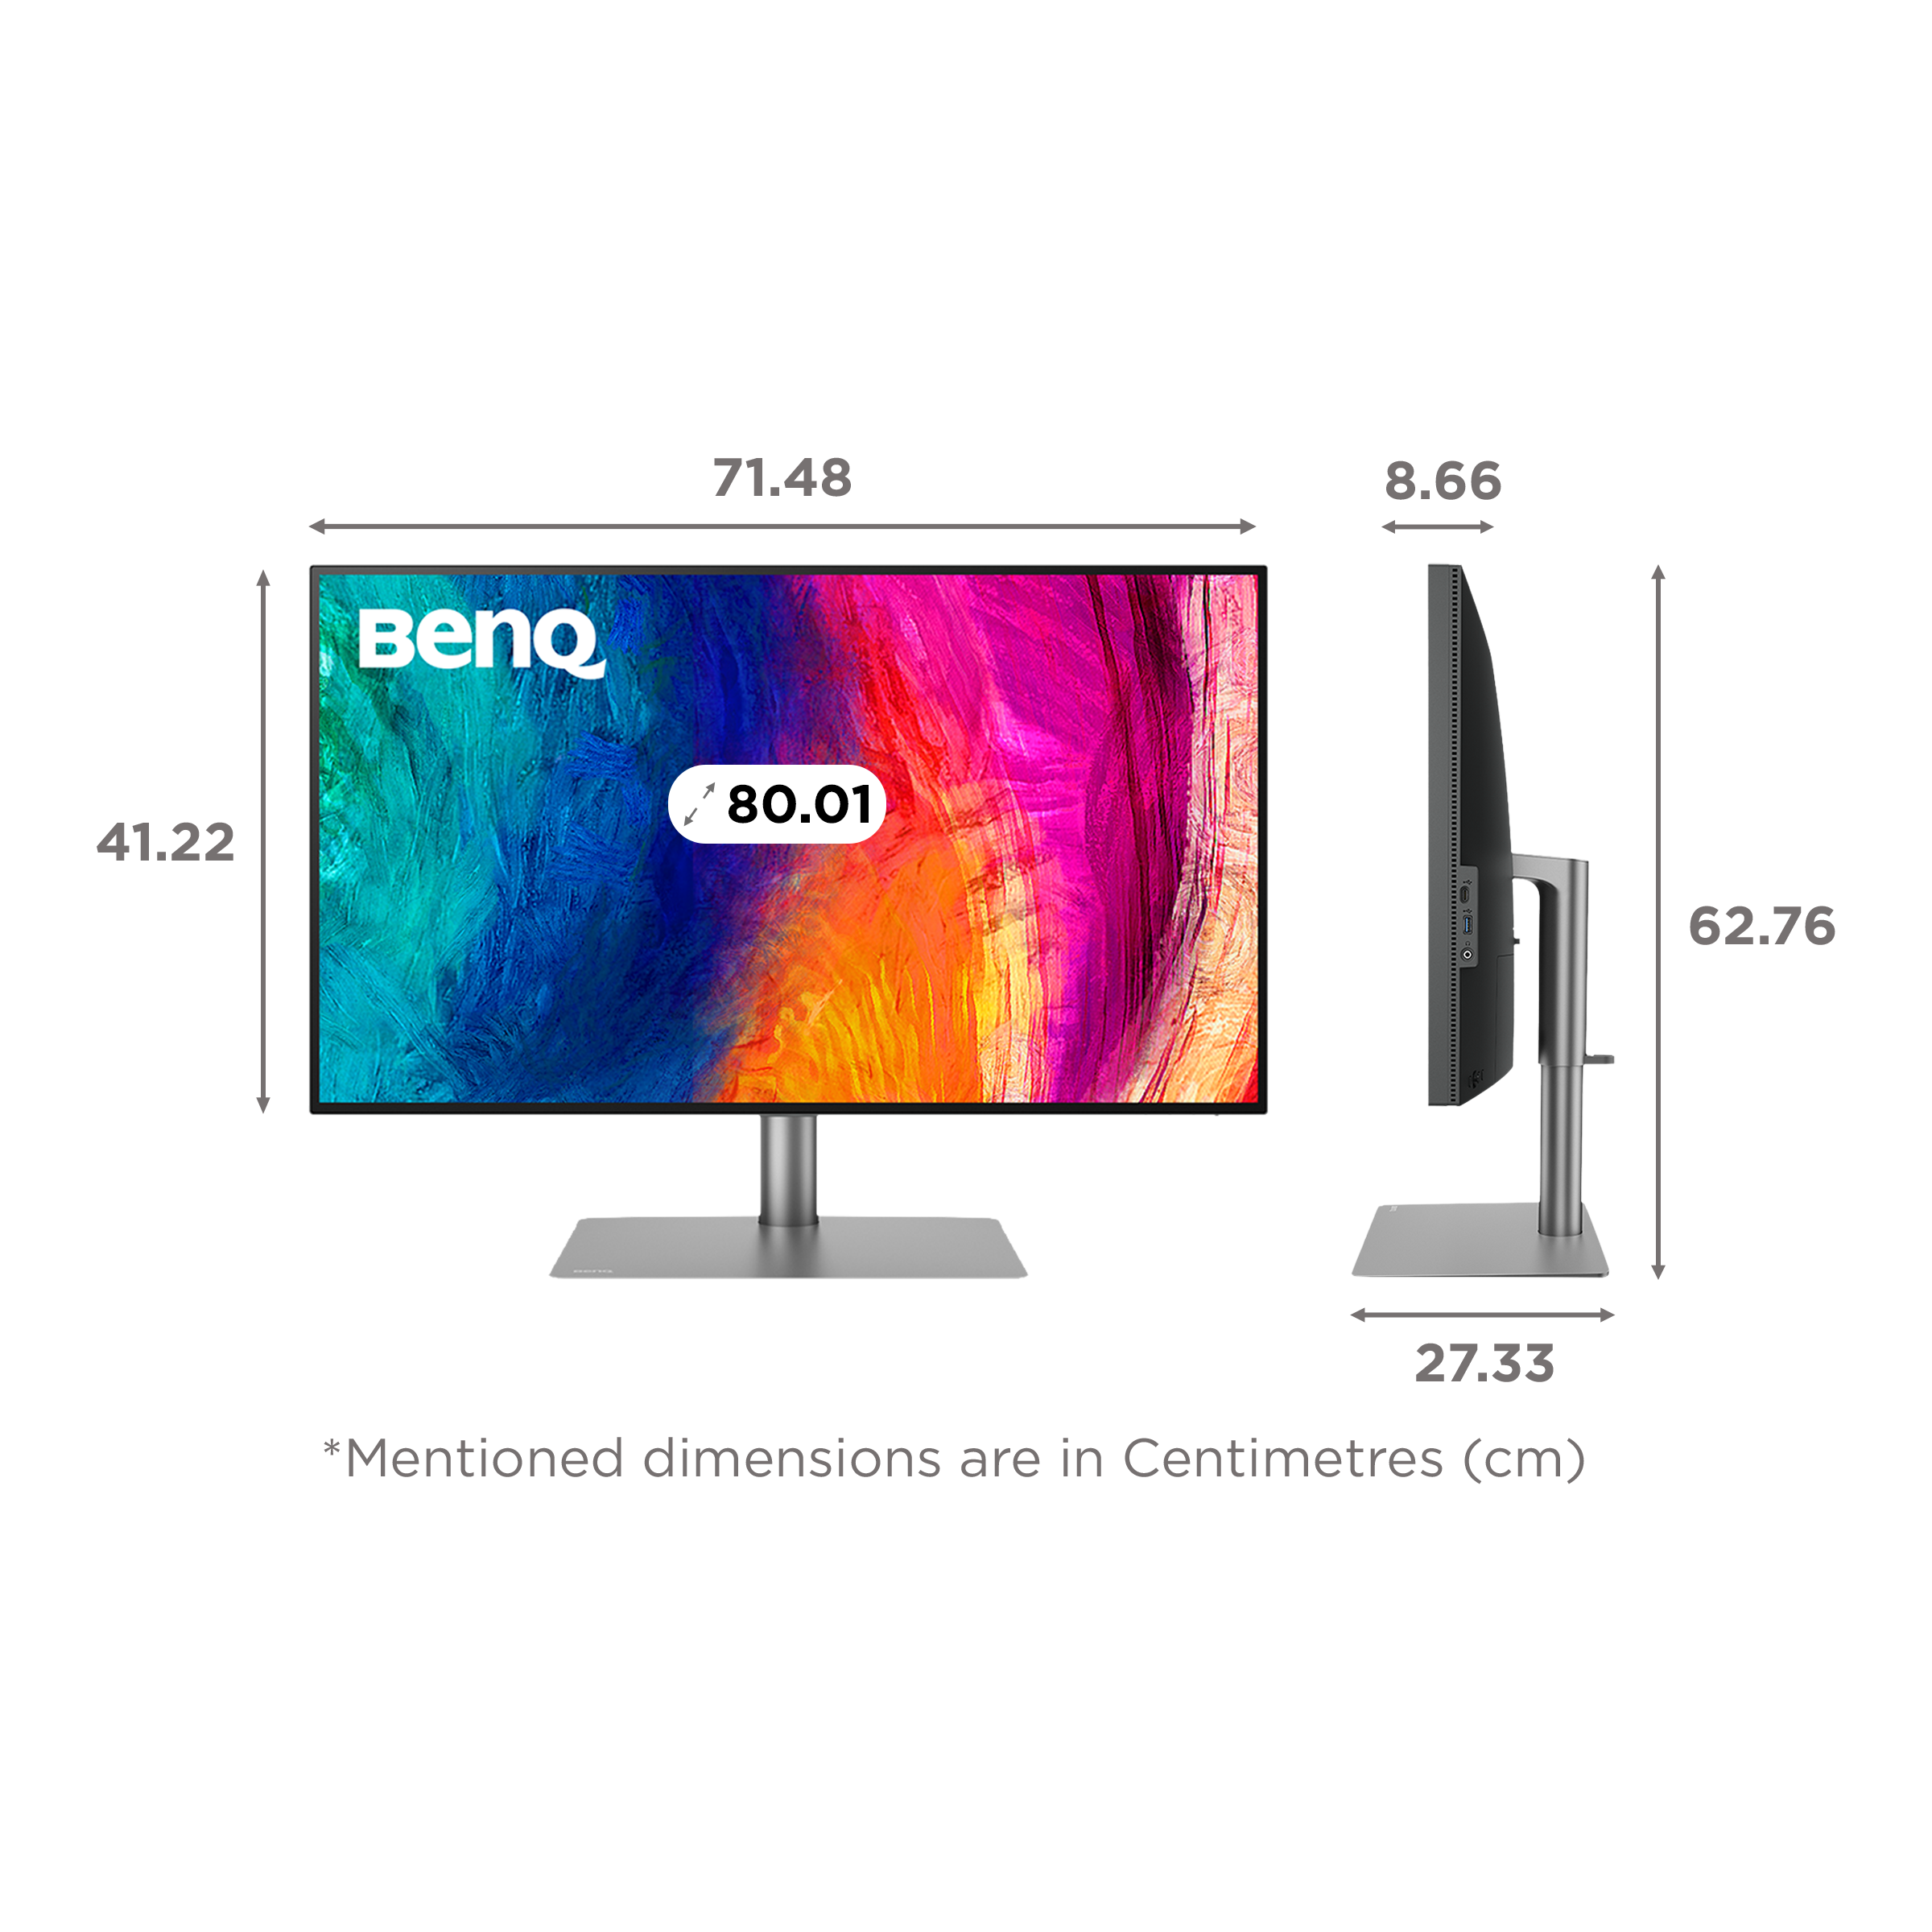 Benq PD3220U écran LED 31,5 4K - Thunderbolt 3, HDMI, DisplayPort - Écran  - BENQ